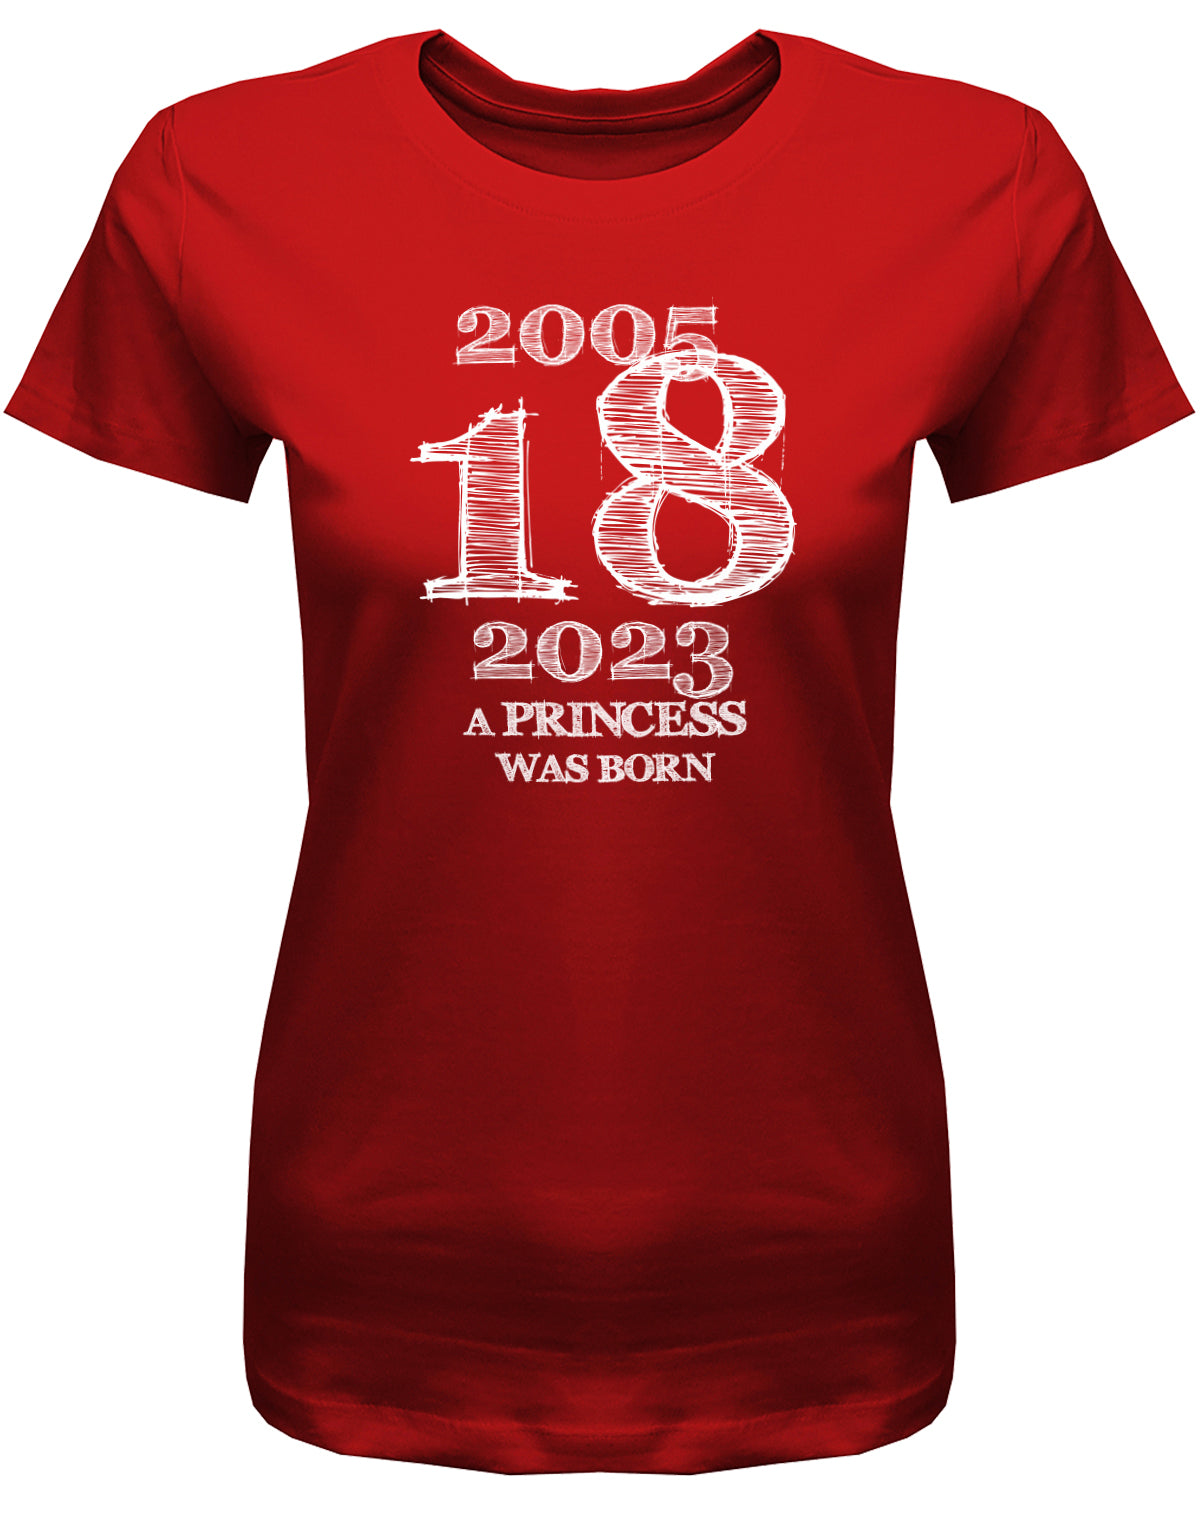 Cooles T-Shirt zum 18 Geburtstag für Mädchen Bedruckt mit: 2005 - 2023 18 a princess was born - Line Style Das T Shirt 10 Geburtstag Mädchen Lustig ist eine super Geschenkidee für alle 18 Jährigen. Man wird nur einmal volljährig. Geschenk zum 18 geburtstag Frau ✓ 2005 geburtstag Frau ✓ 18 Geburtstag tshirt ✓ shirt geburtstag 18 Rot